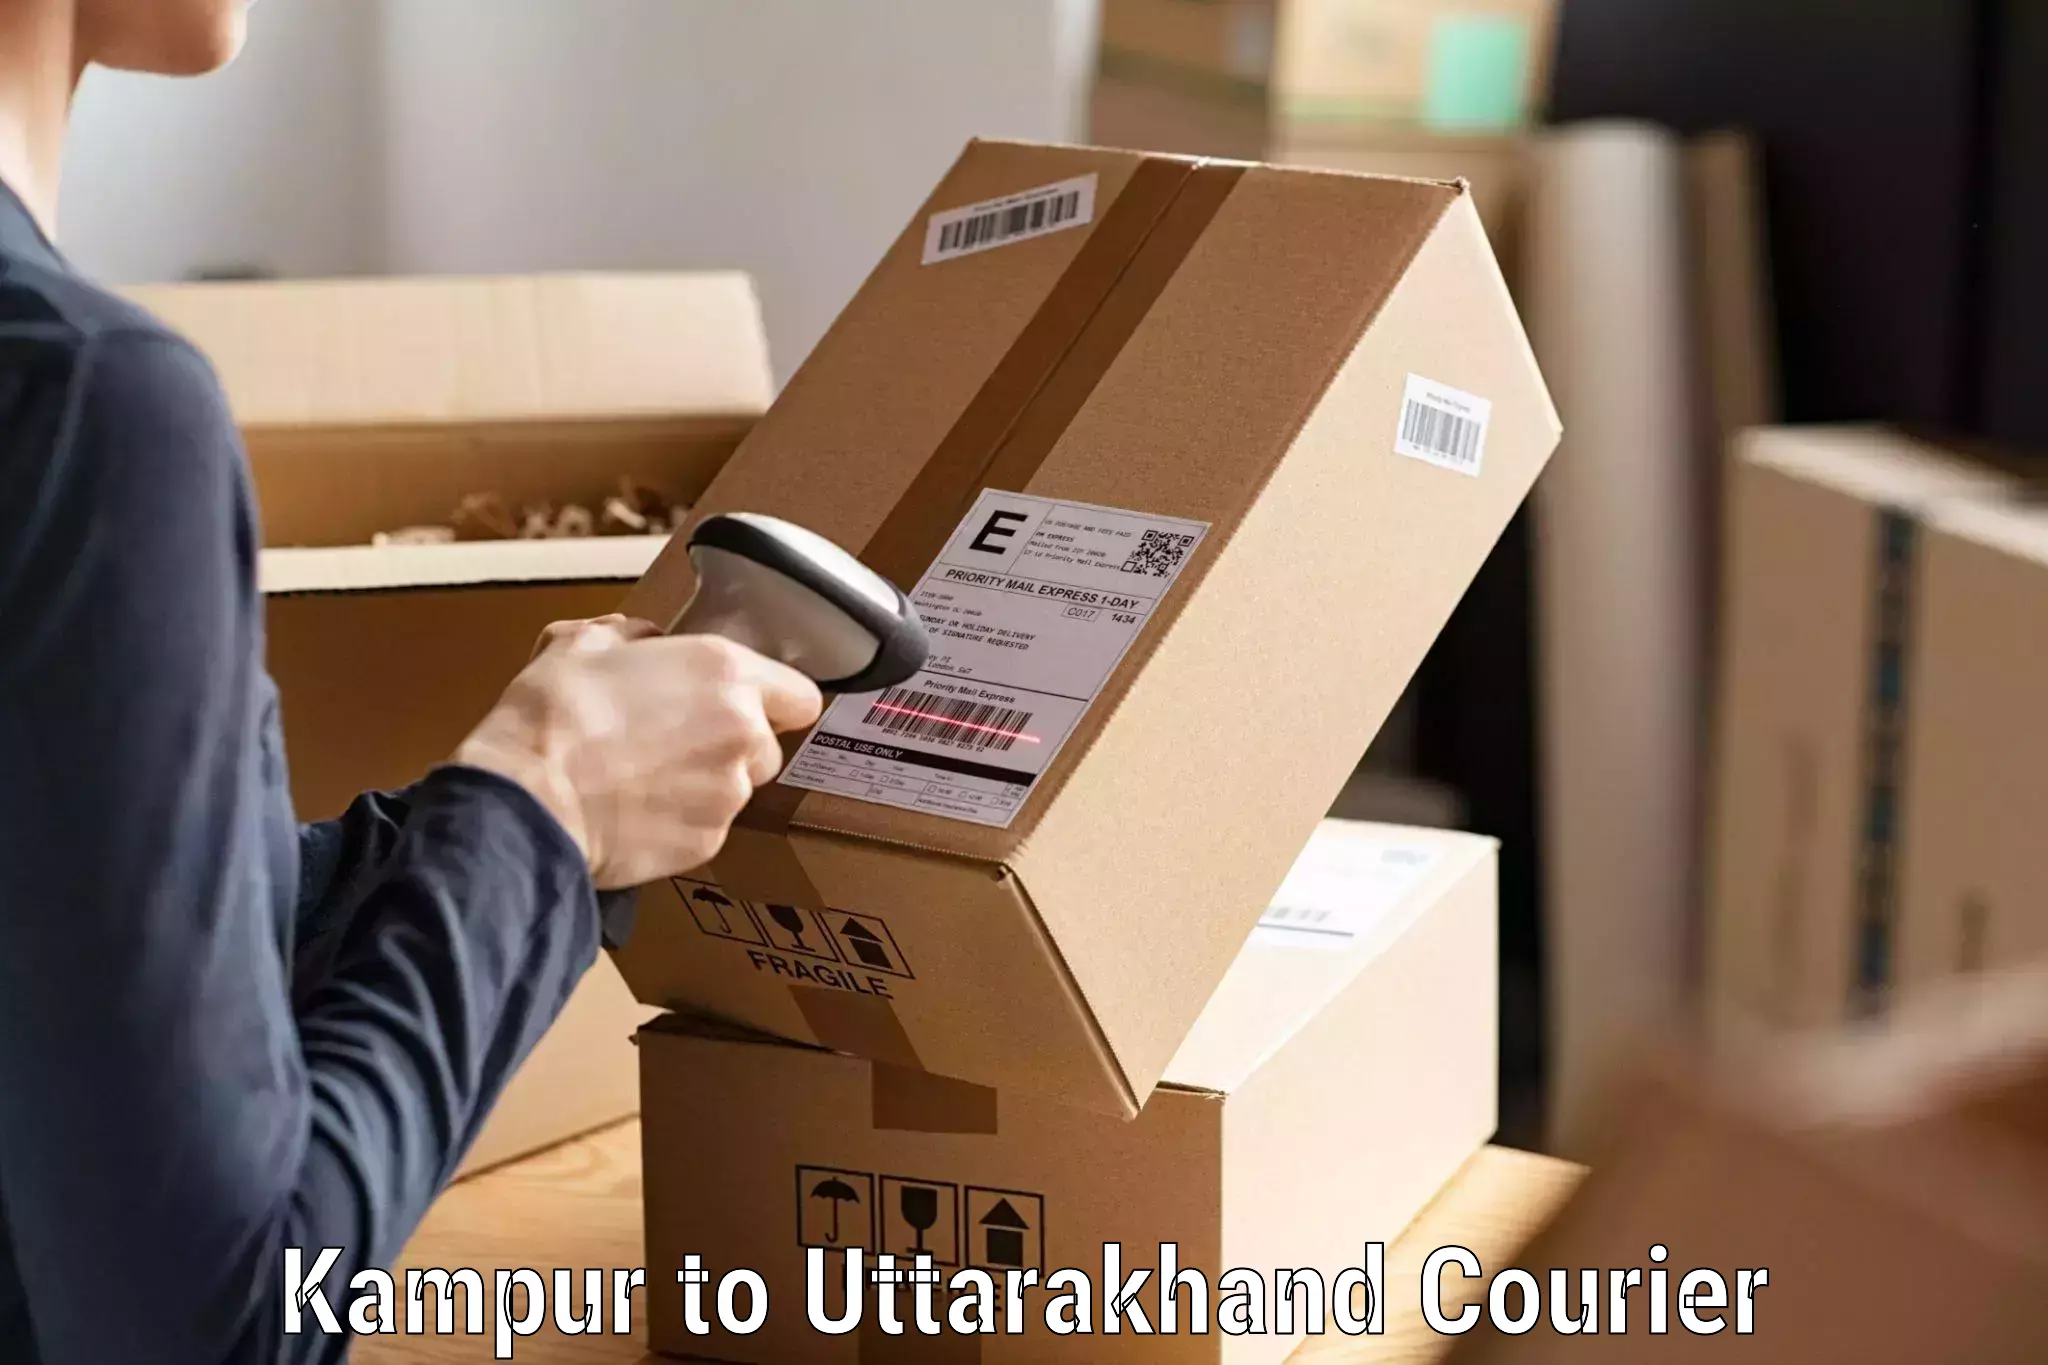 Affordable parcel service Kampur to Uttarakhand